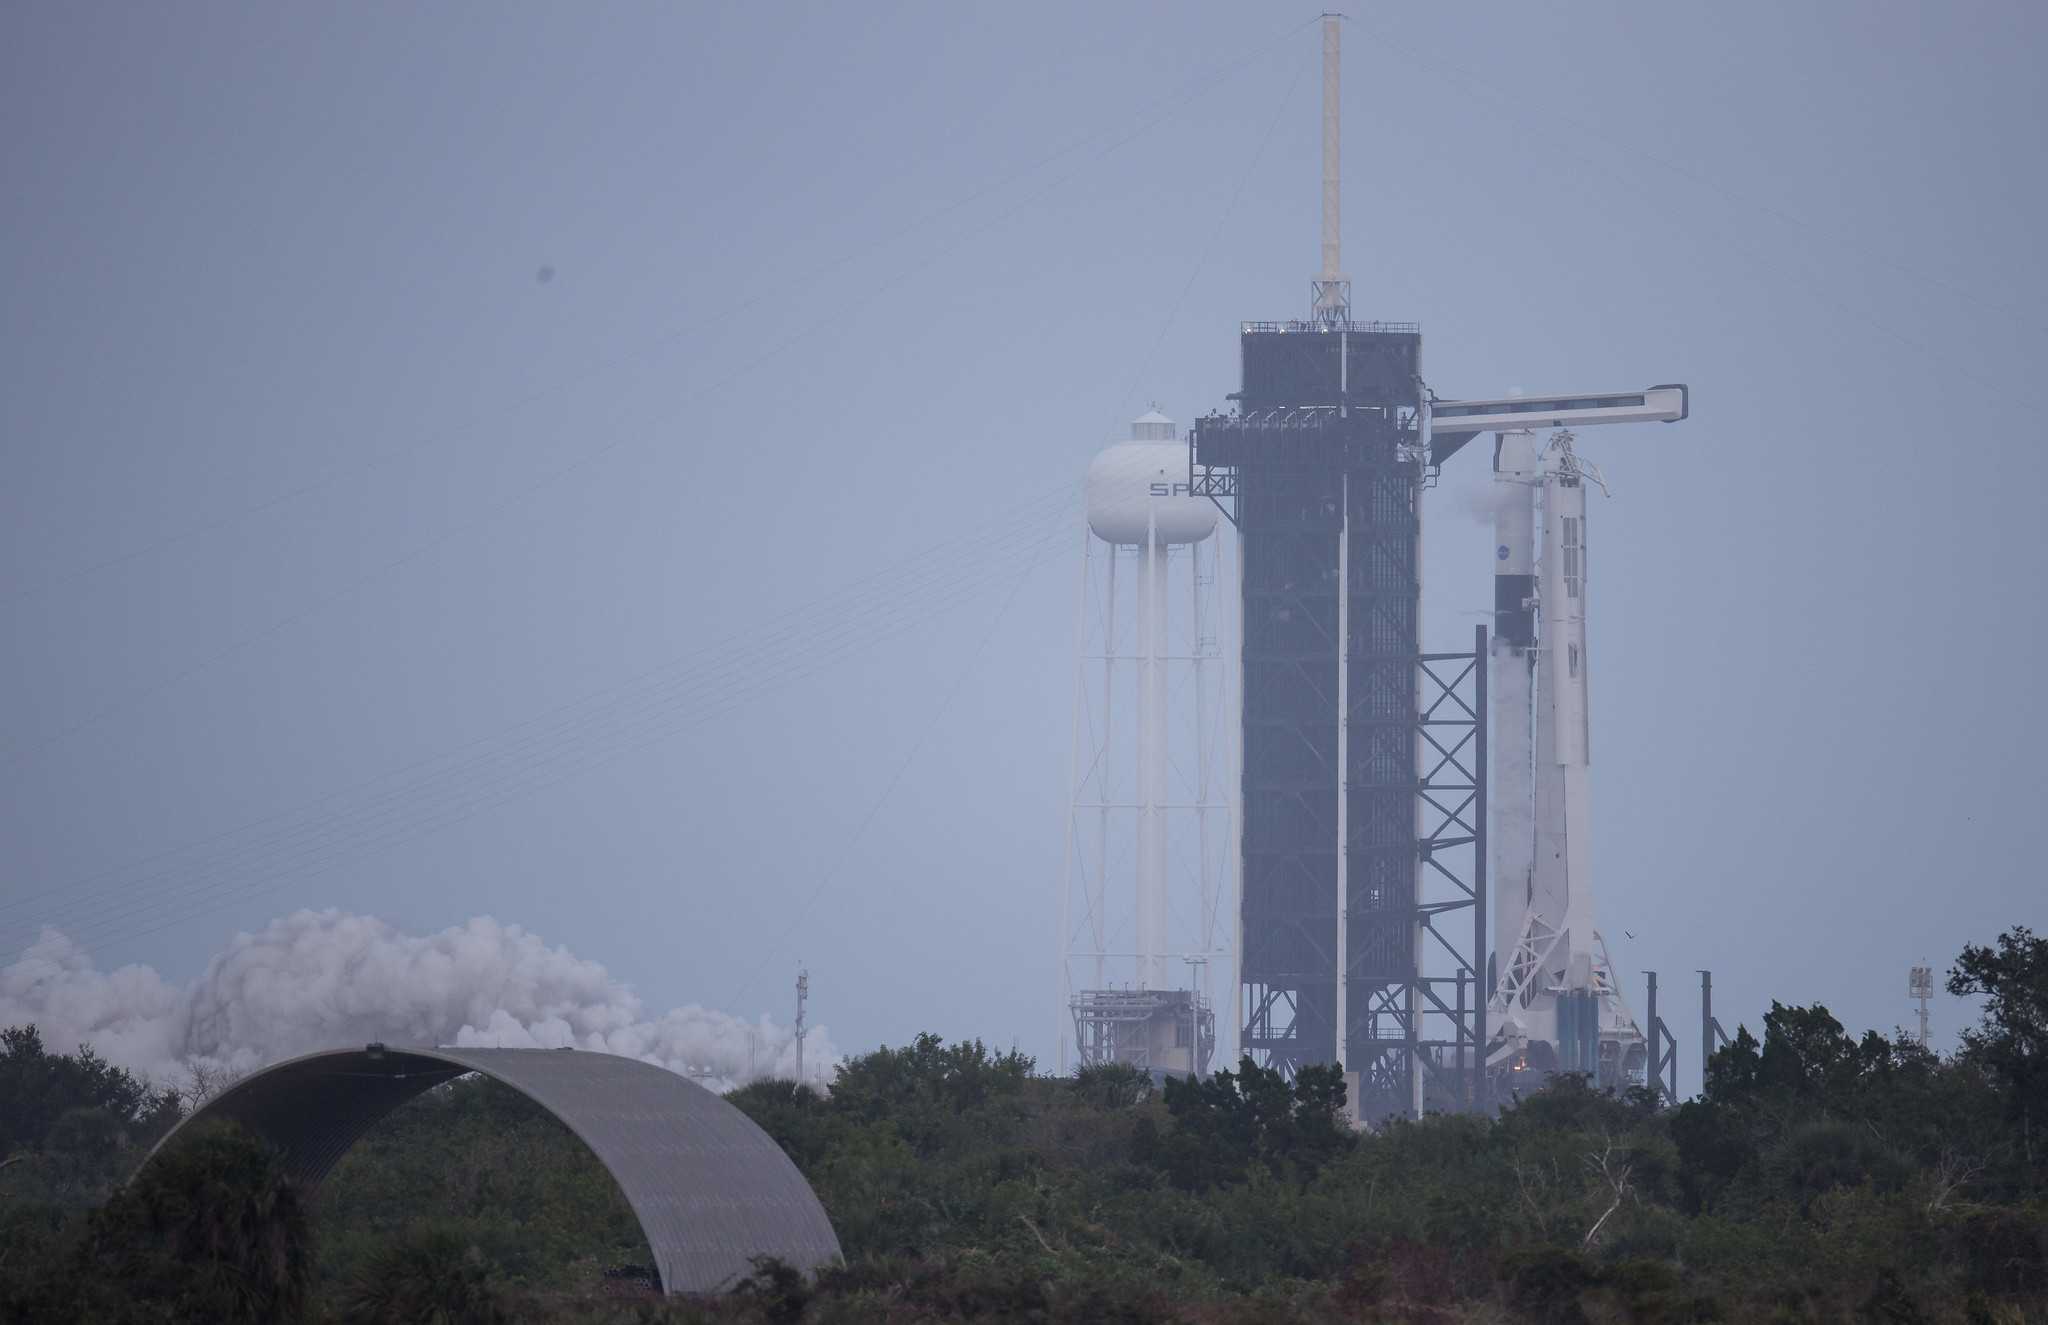 Una prueba de cohete SpaceX Falcon 9 enciende sus motores de primera etapa brevemente sobre el Pad 39A en el Centro Espacial Kennedy de la NASA en Cabo Cañaveral, Florida, el 11 de noviembre de 2020. El cohete lanzará la misión de astronauta Crew-1 para la NASA el 14 de noviembre.